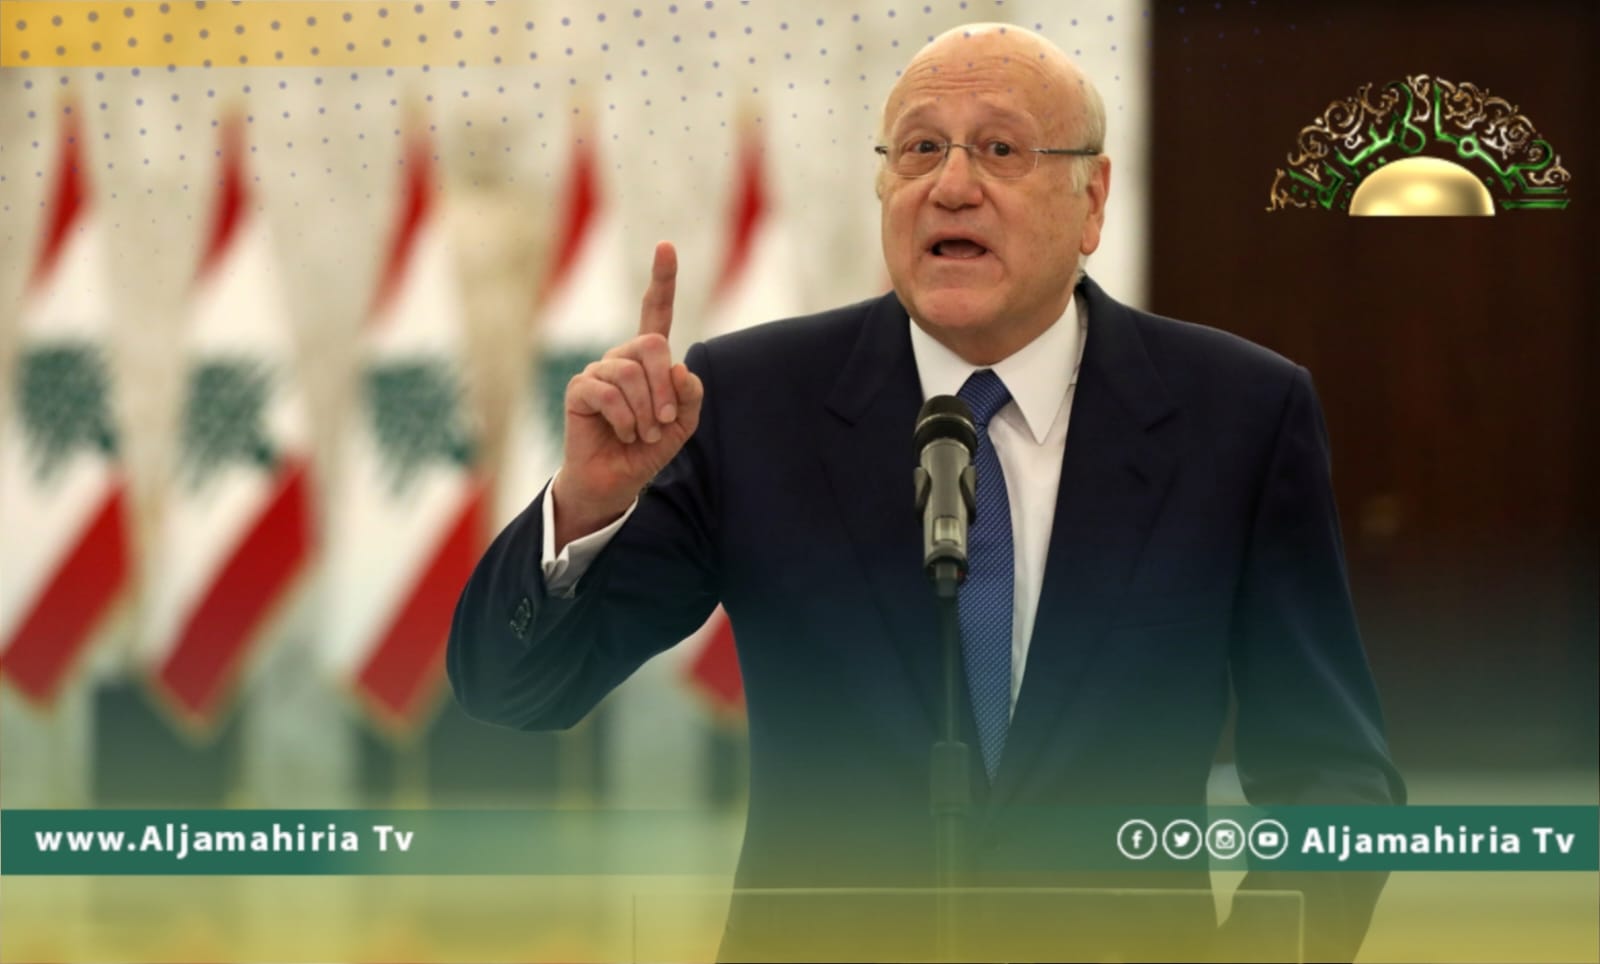 رئيس الحكومة اللبنانية نجيب ميقاتي